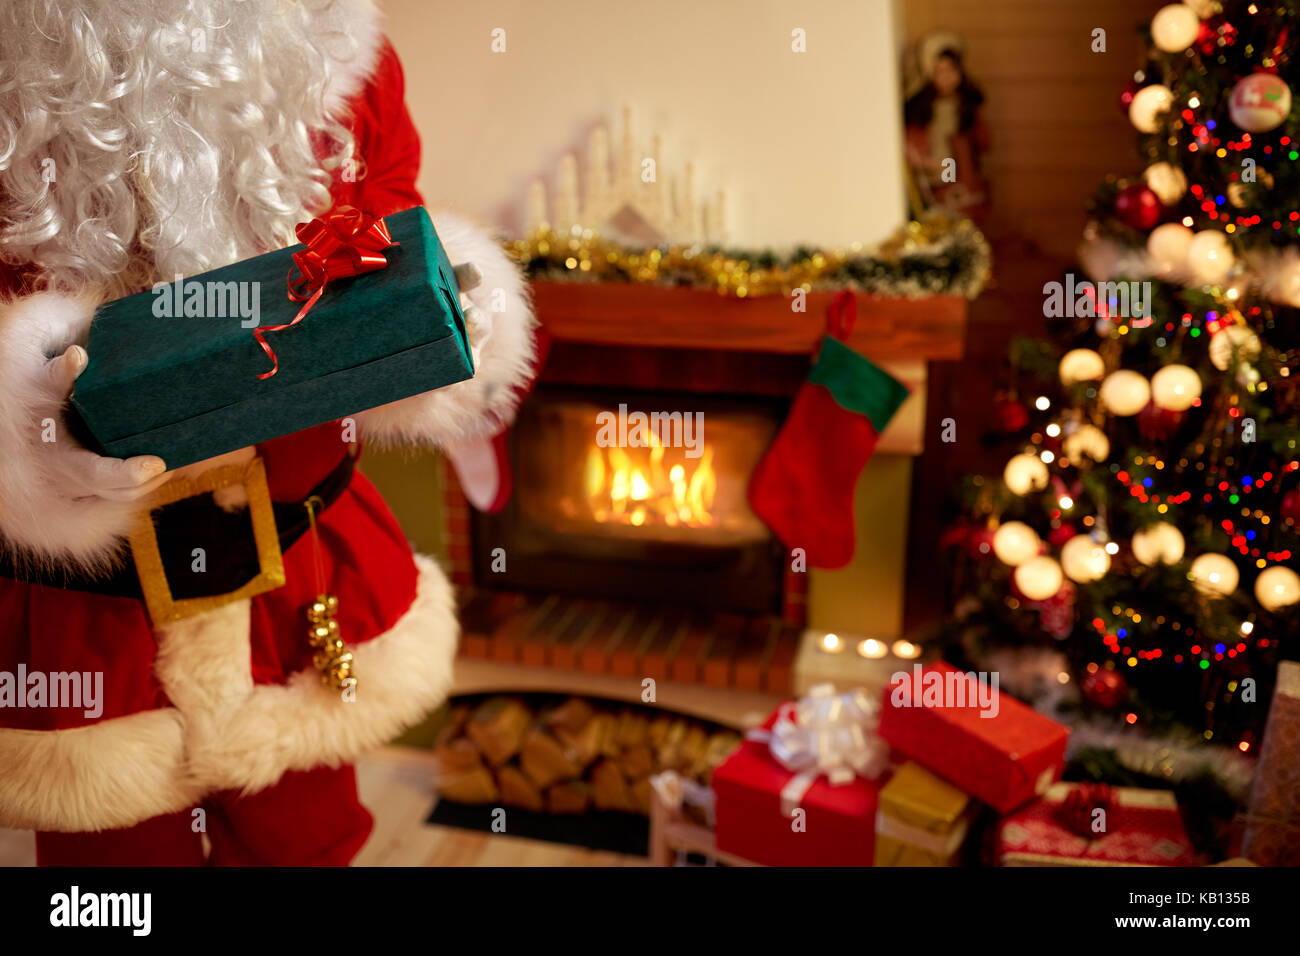 Santa Claus in mani guantate azienda confezione regalo accanto ad albero di natale Foto Stock